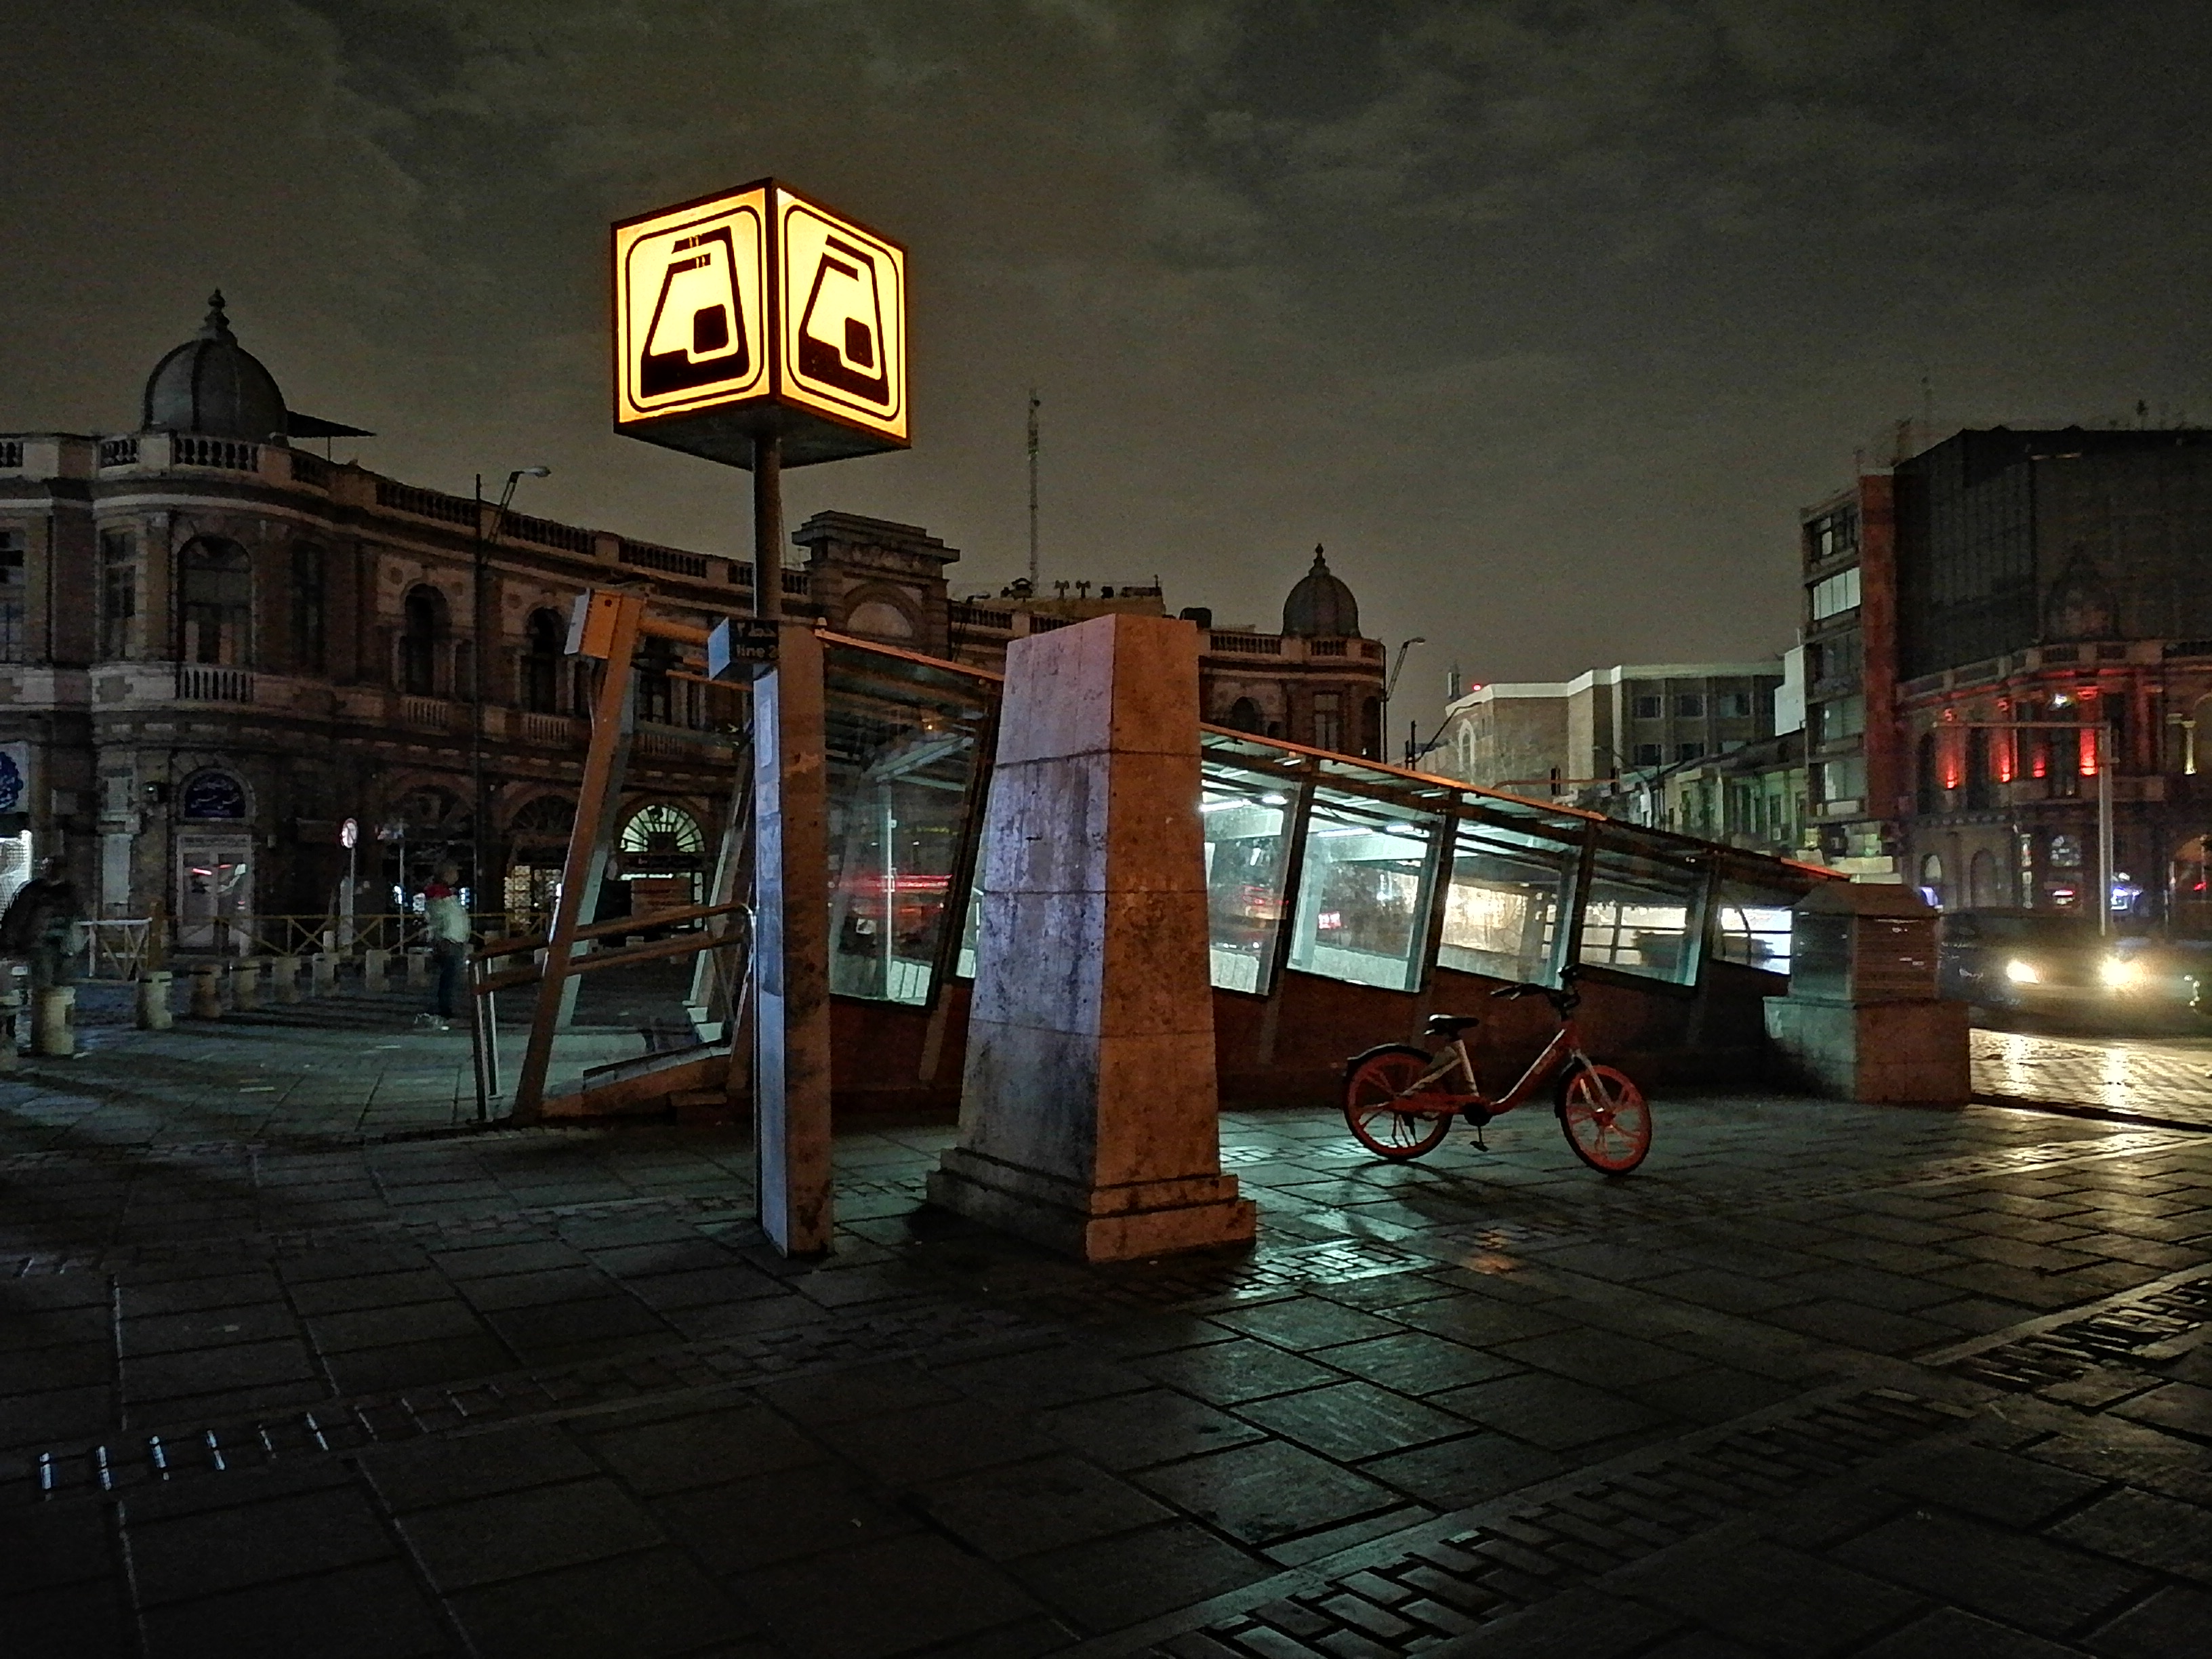 نمونه عکس ثبت شده توسط دوربین اصلی Y7a هواوی در محیط تاریک با حالت شب - ورودی متروی حسن‌آباد